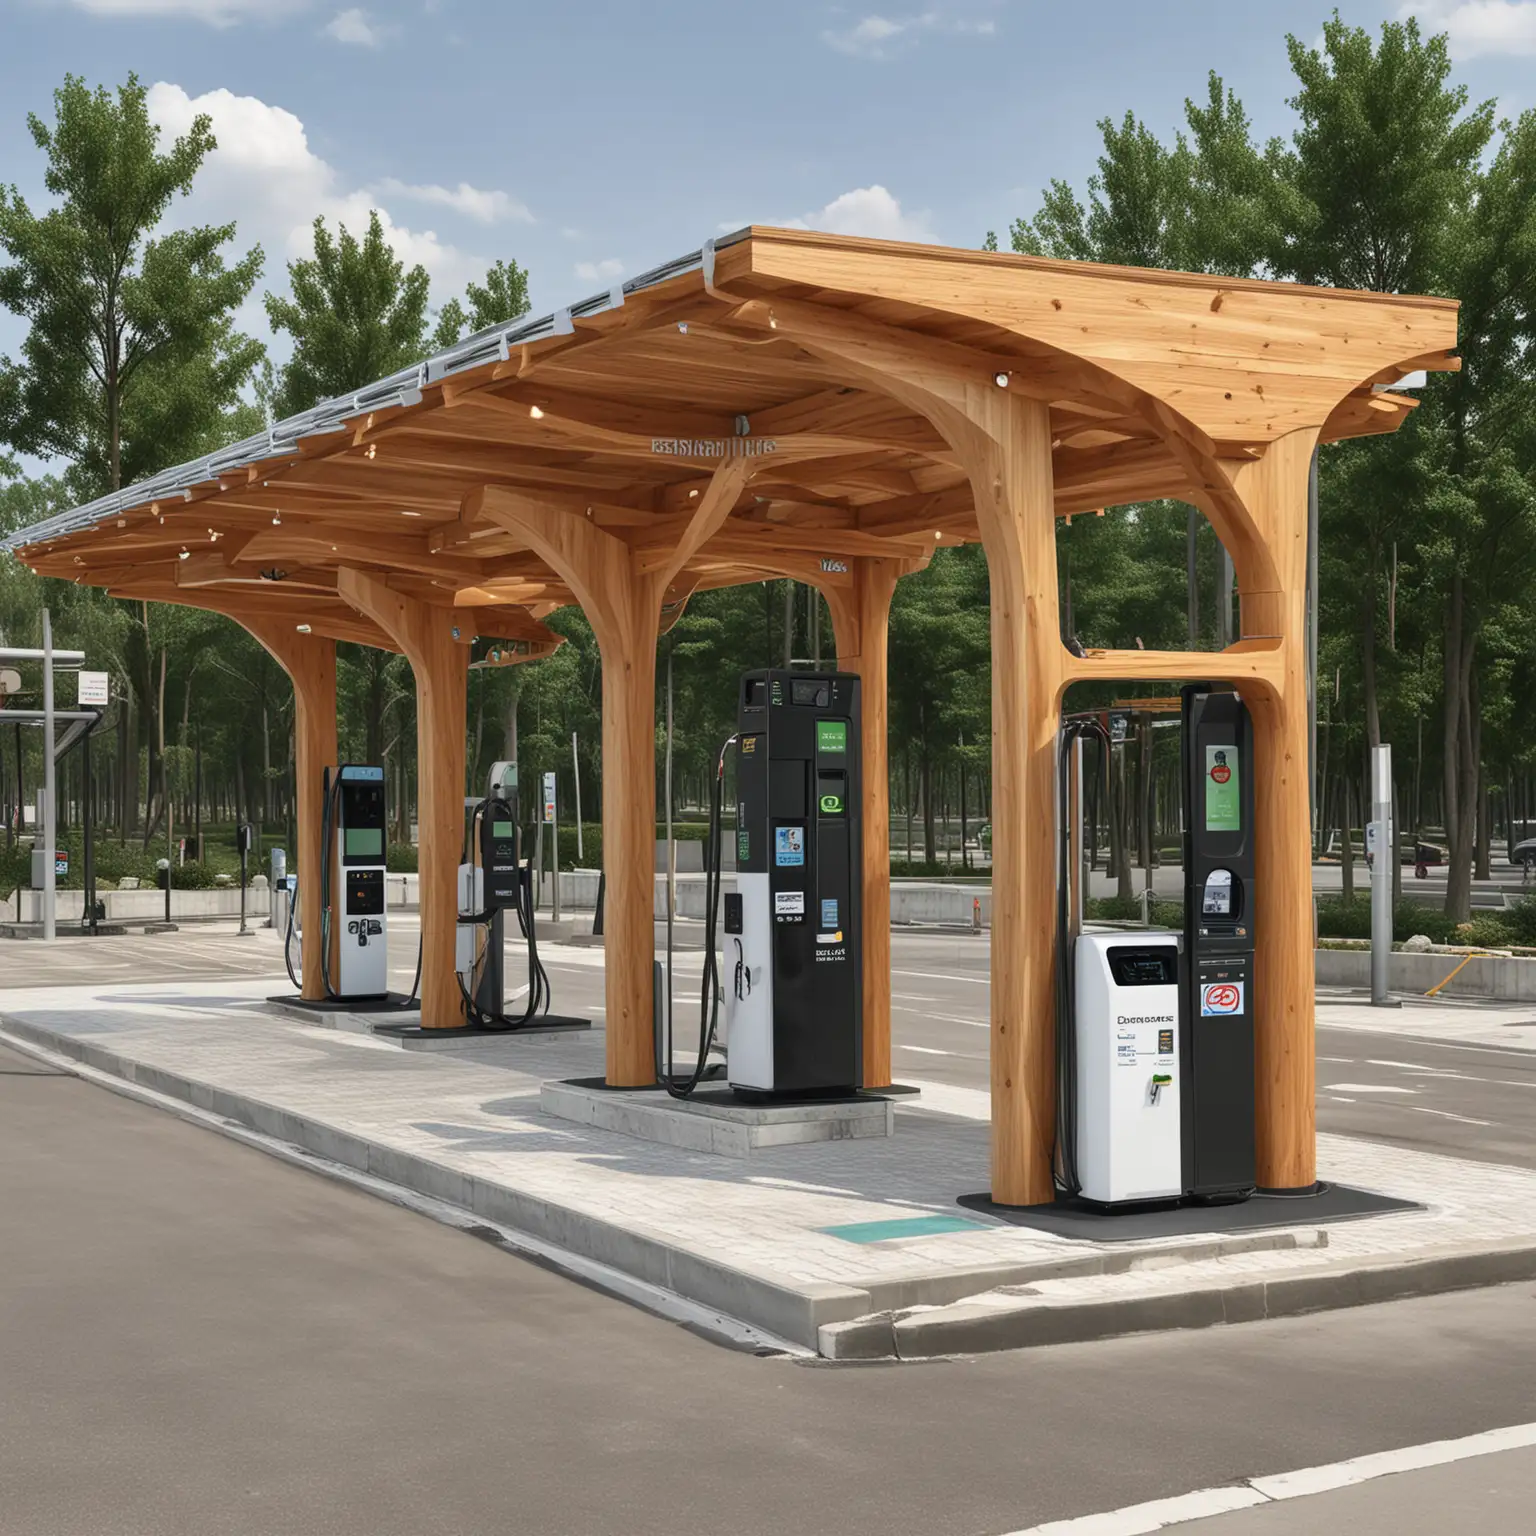 Intresting Glulam ev fast charging stations design 